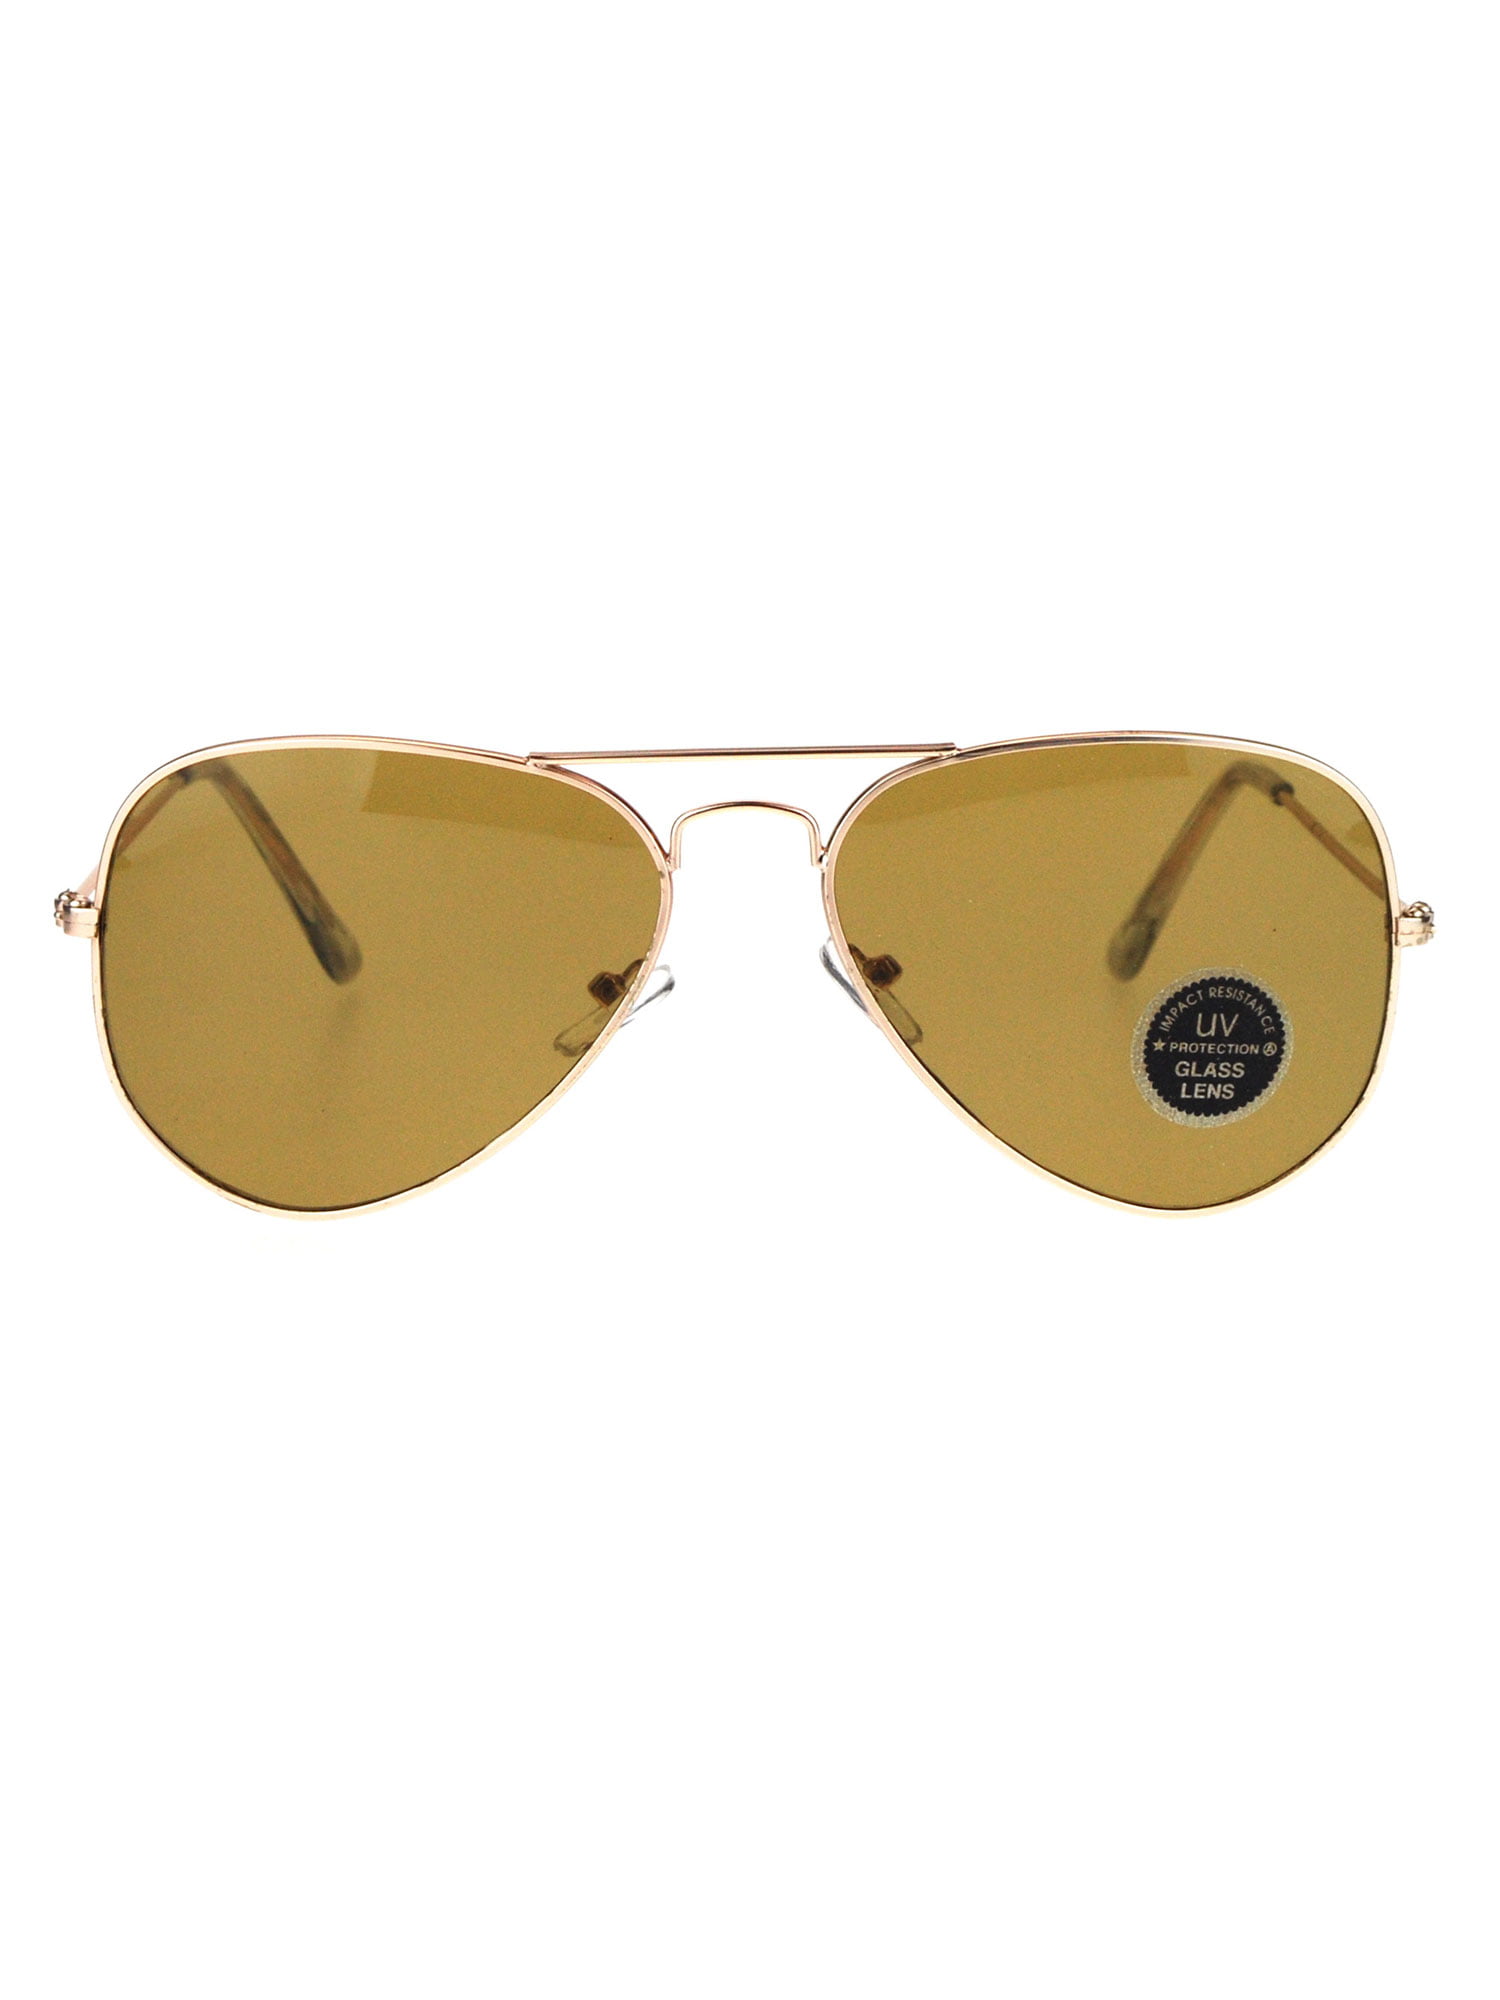 SA106 Temper Glass Shatterpoof Lens Oversize Thin Plastic Horn Rim Sunglasses 